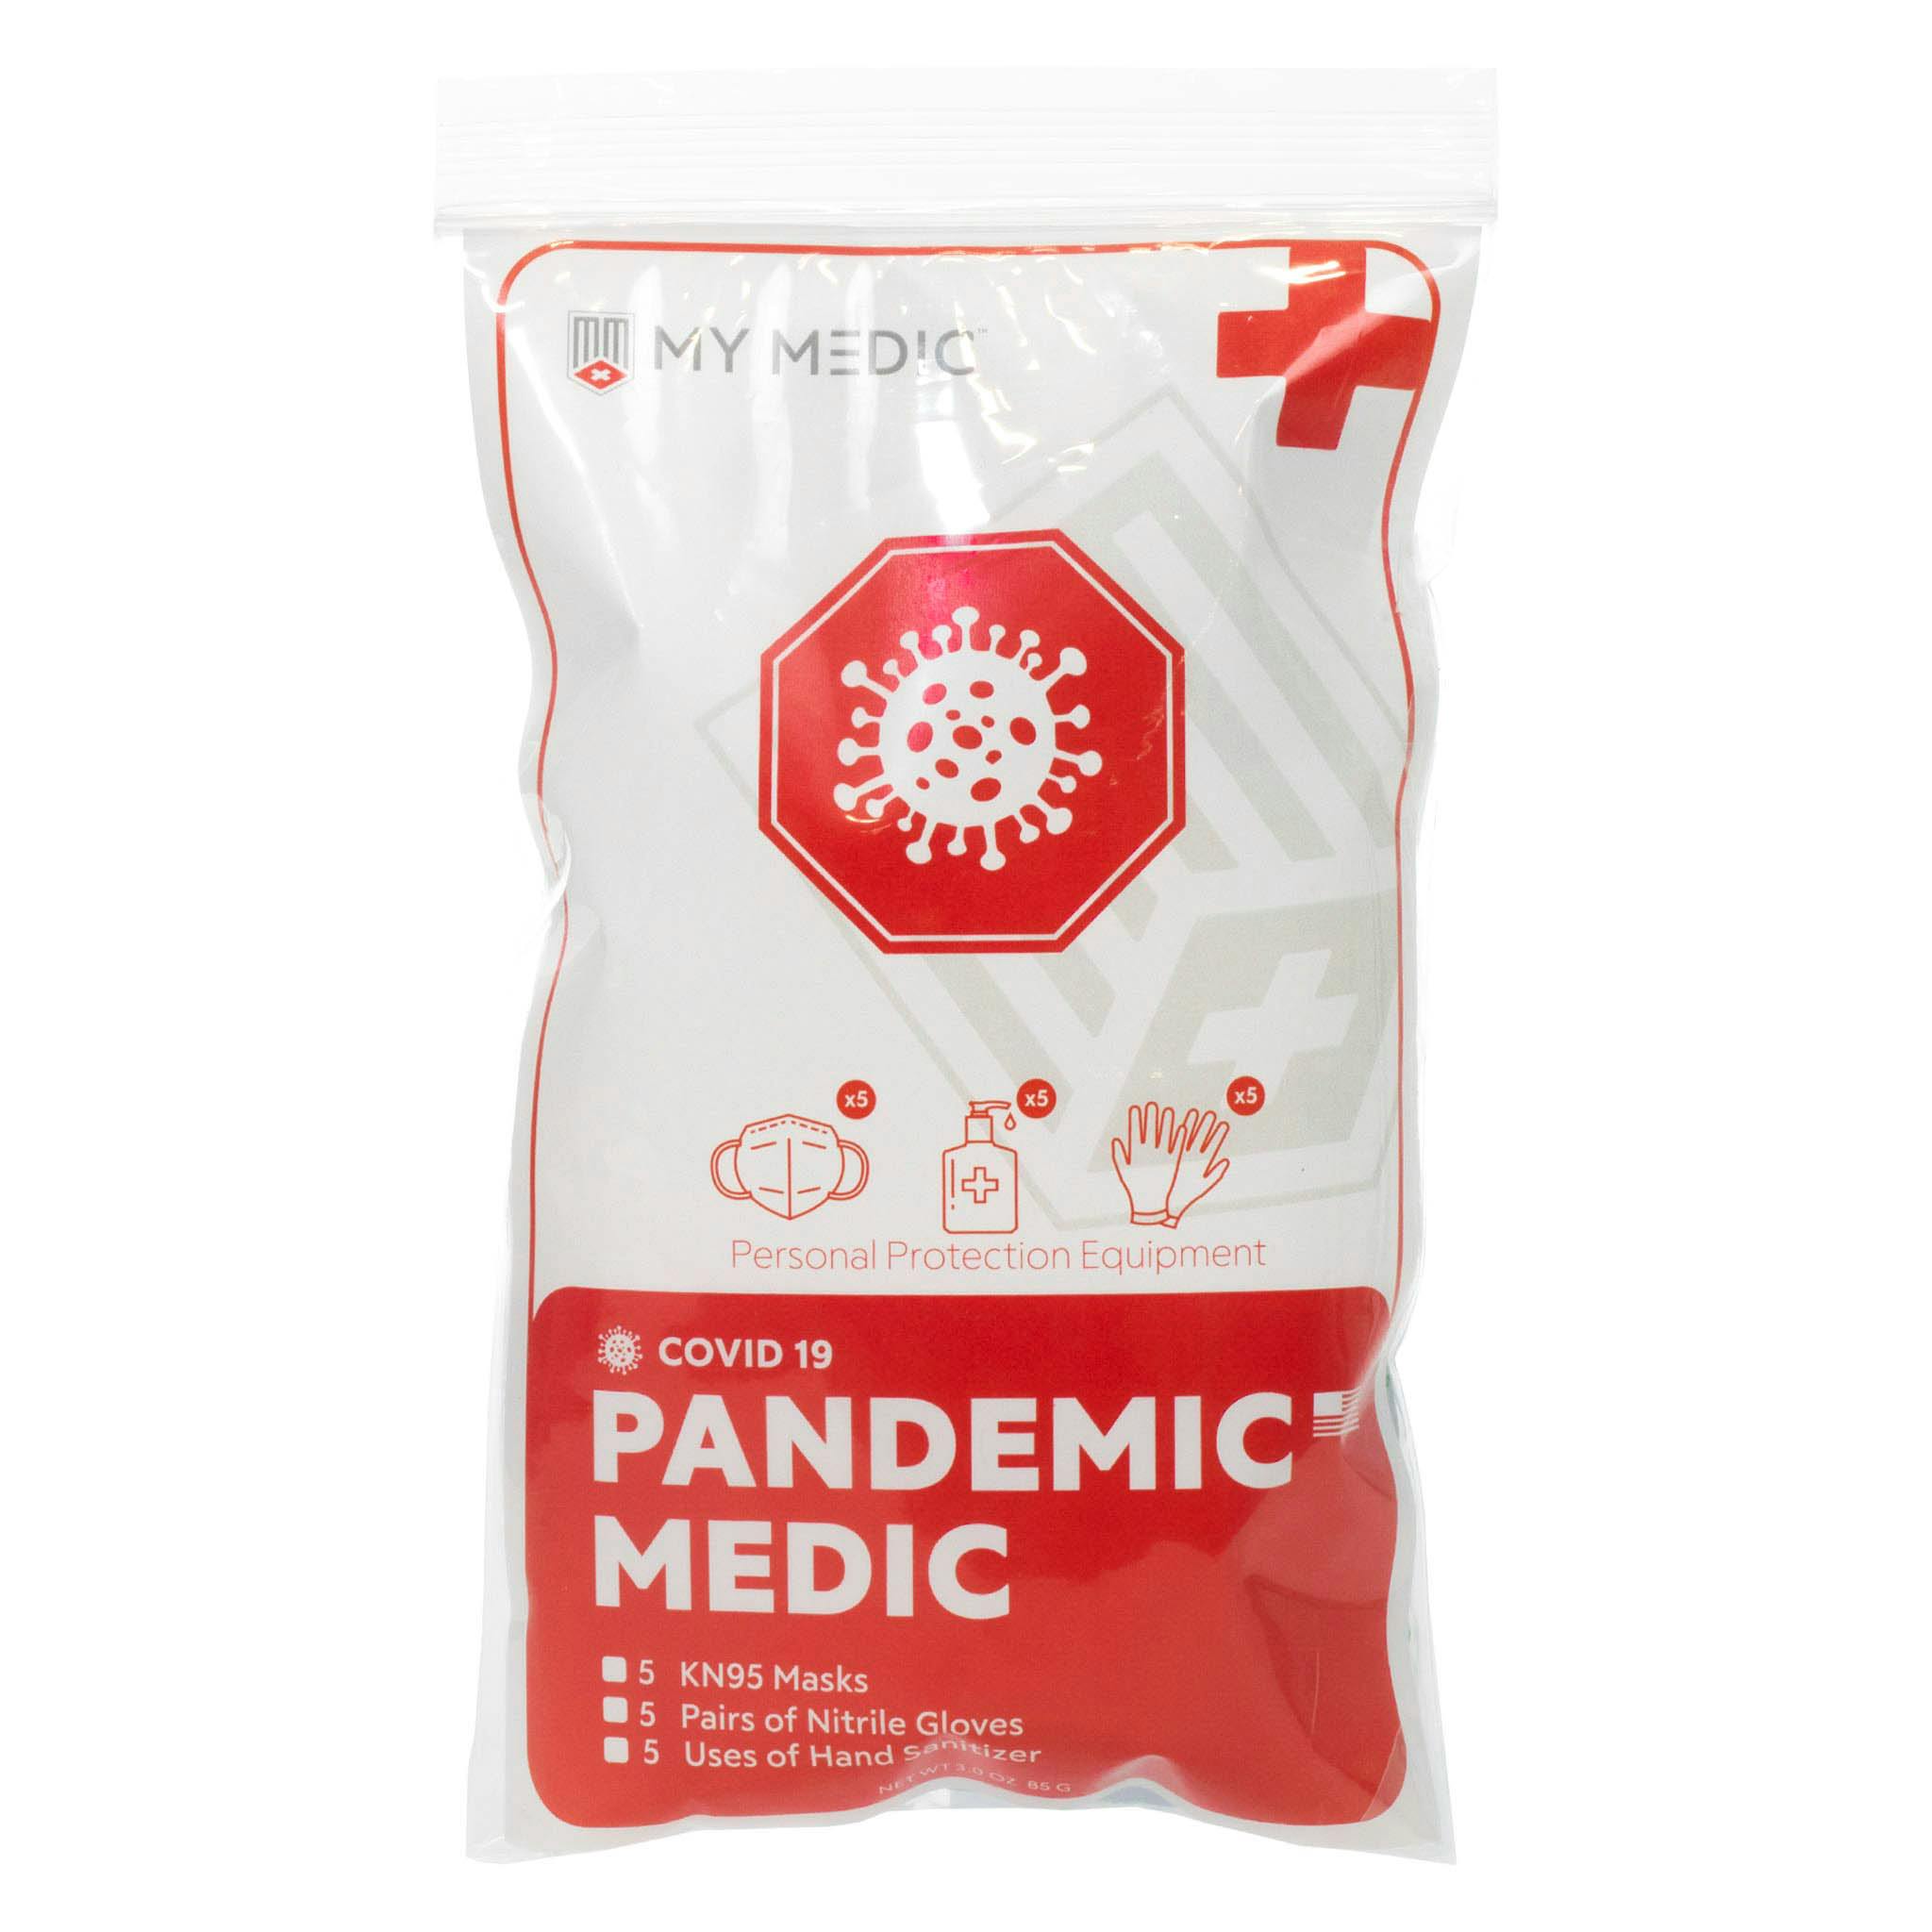 Pandemic Medic